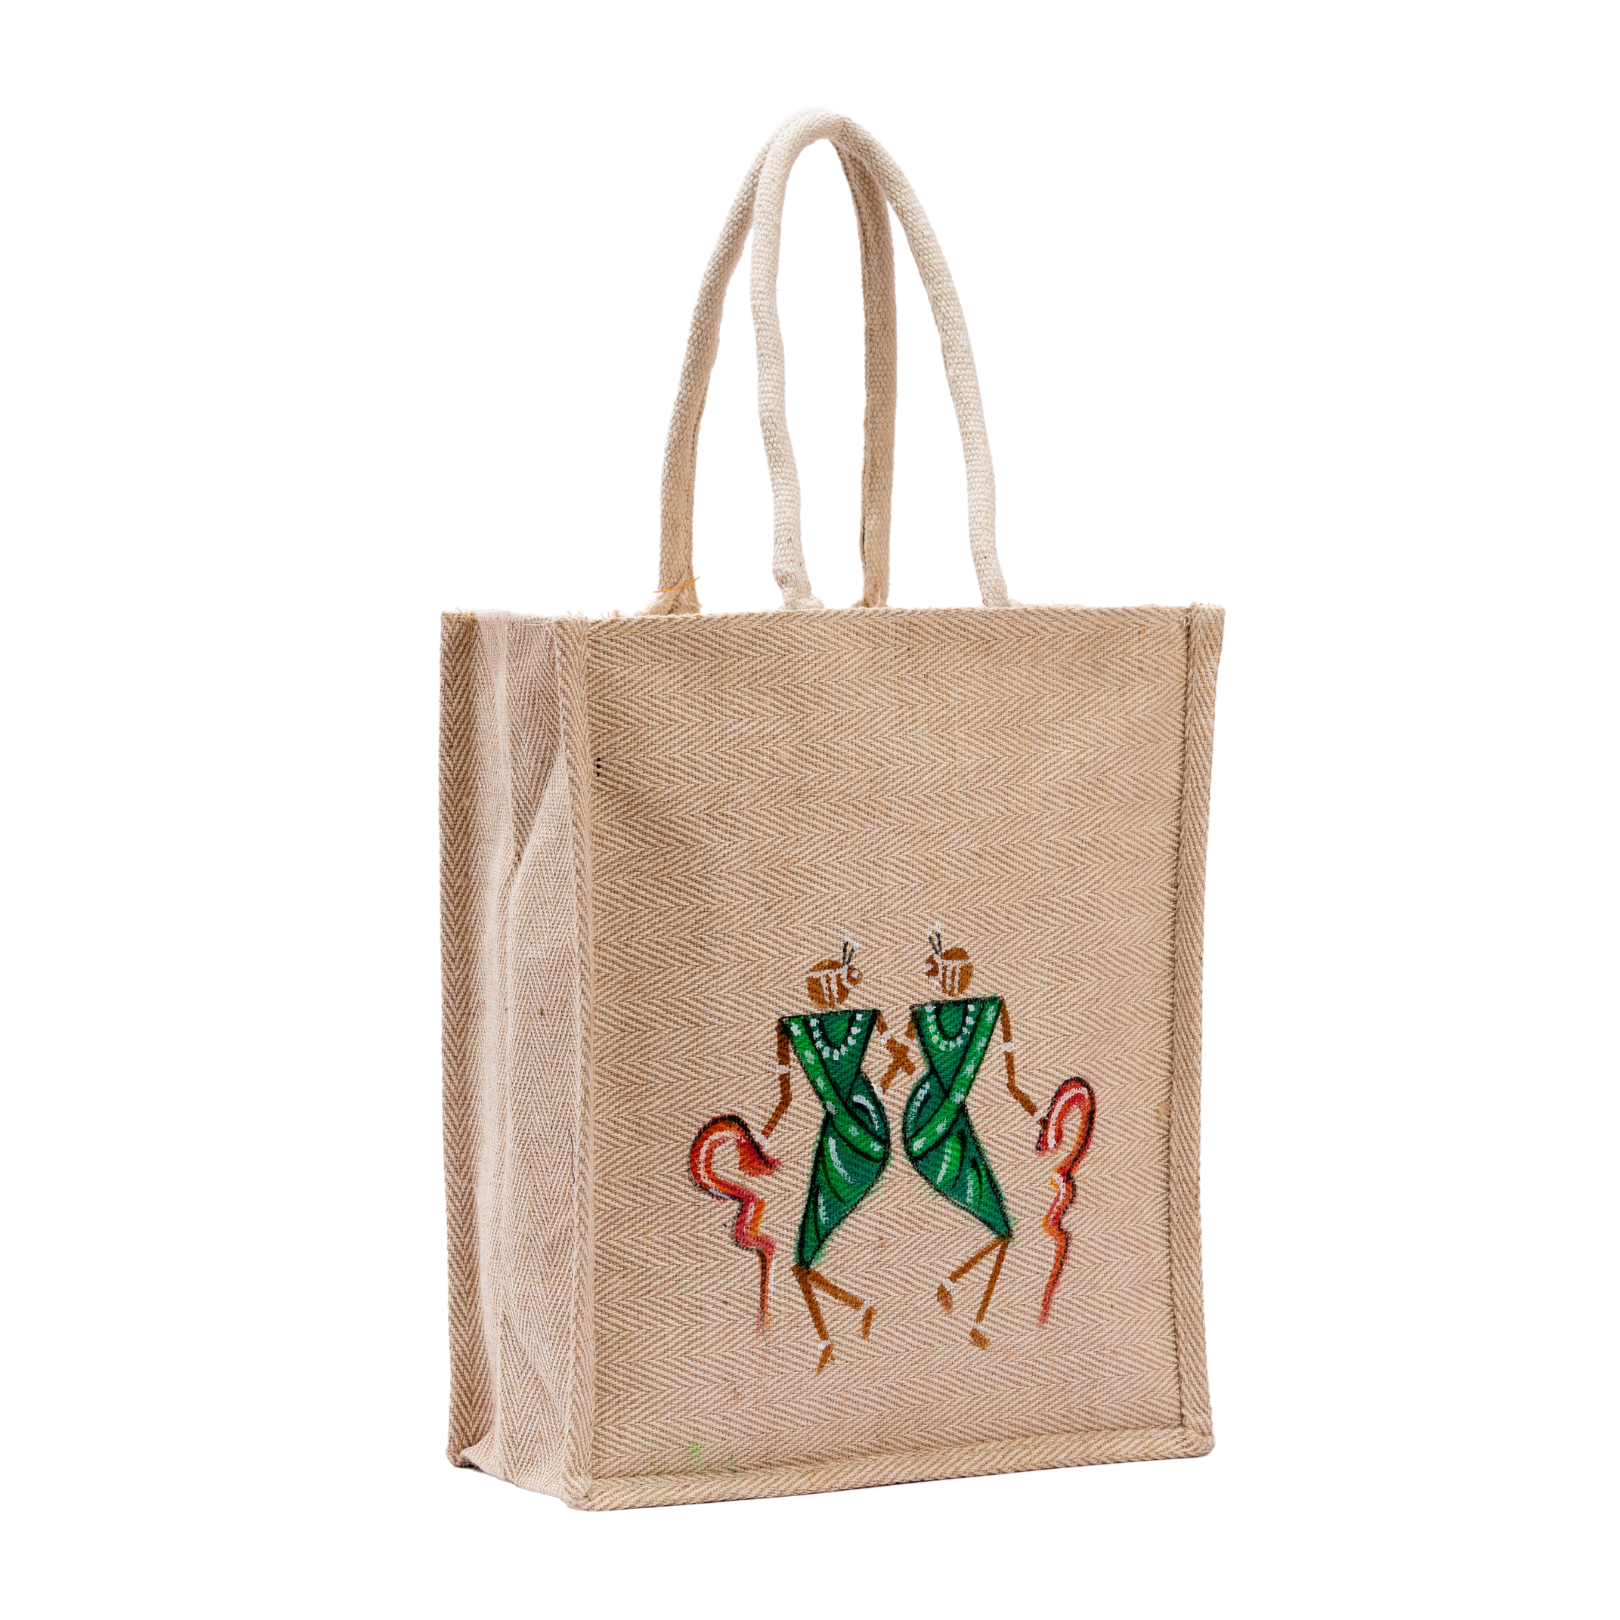 Tote bag /customised bag /customised tote bag / tote book bag / canvas bag  /Customized canvas bag / beach